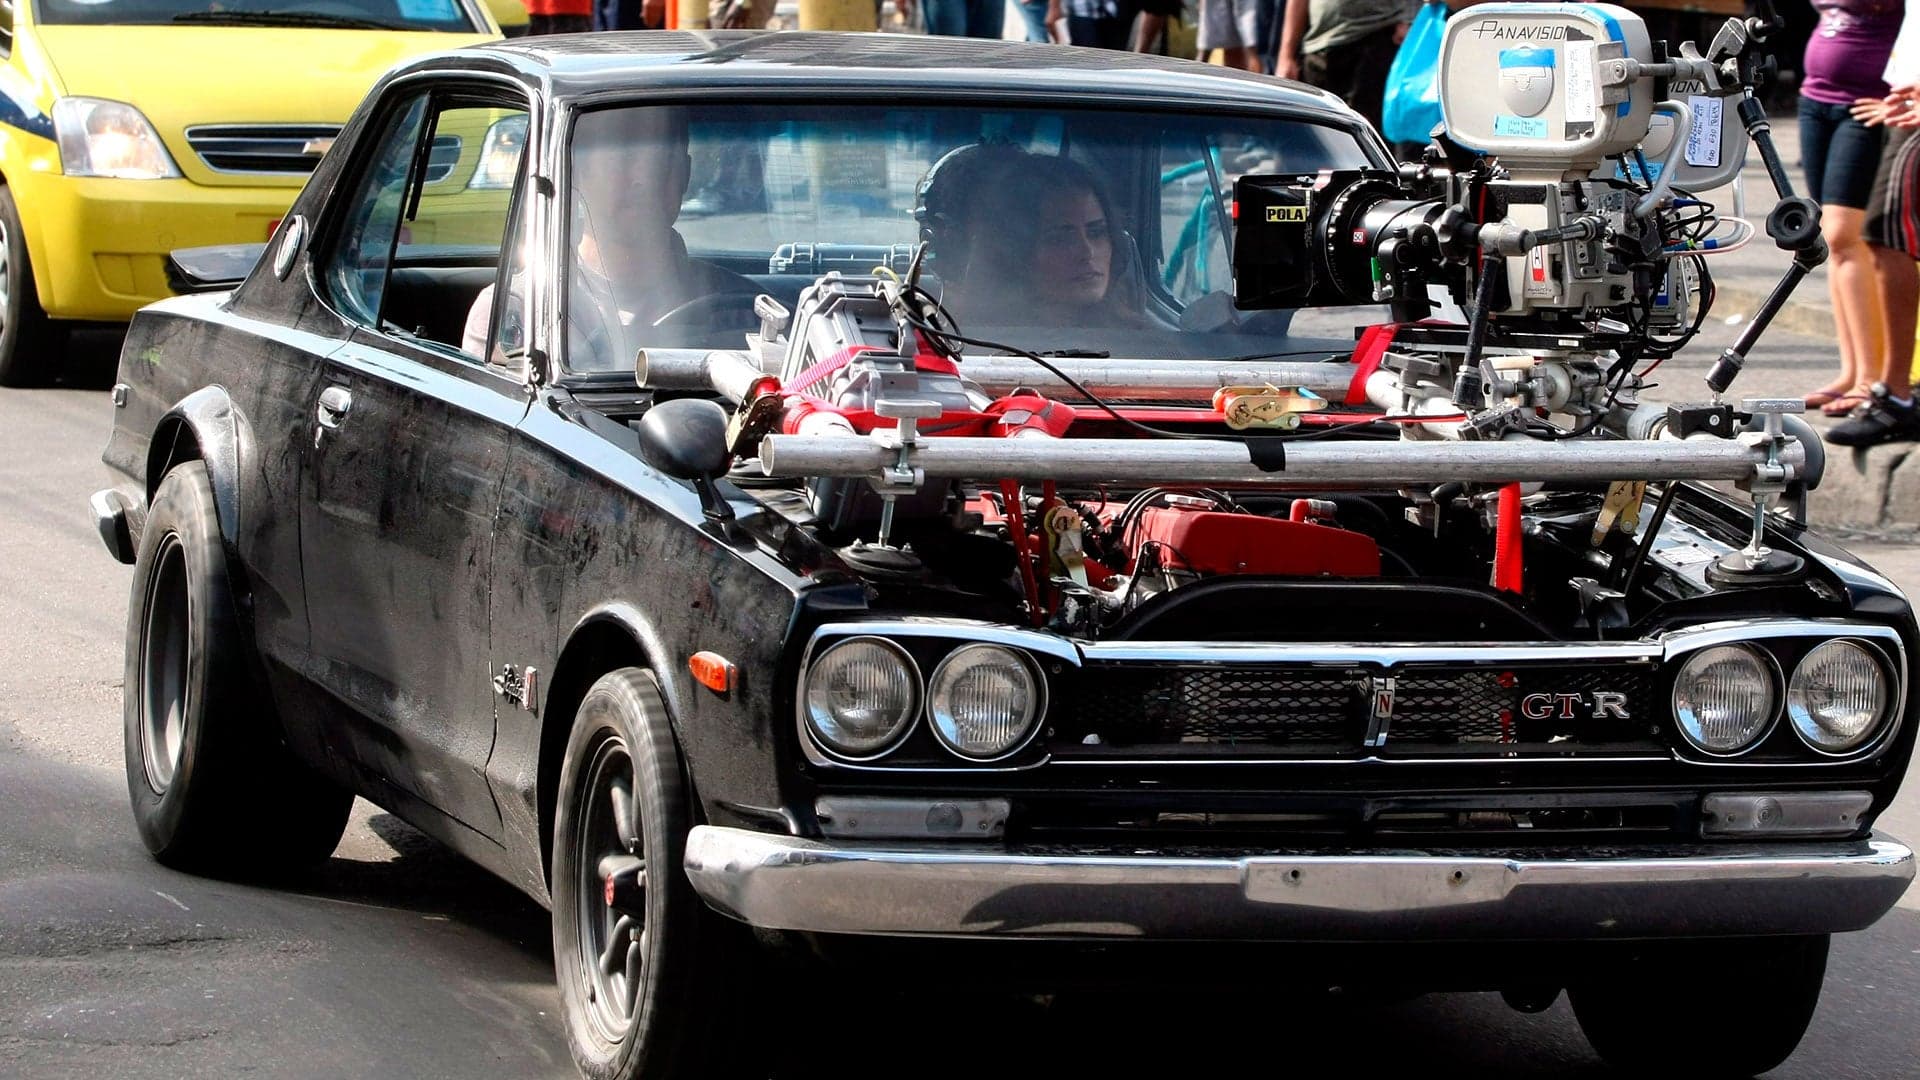 Is Fast 8 Filming in Cuba?